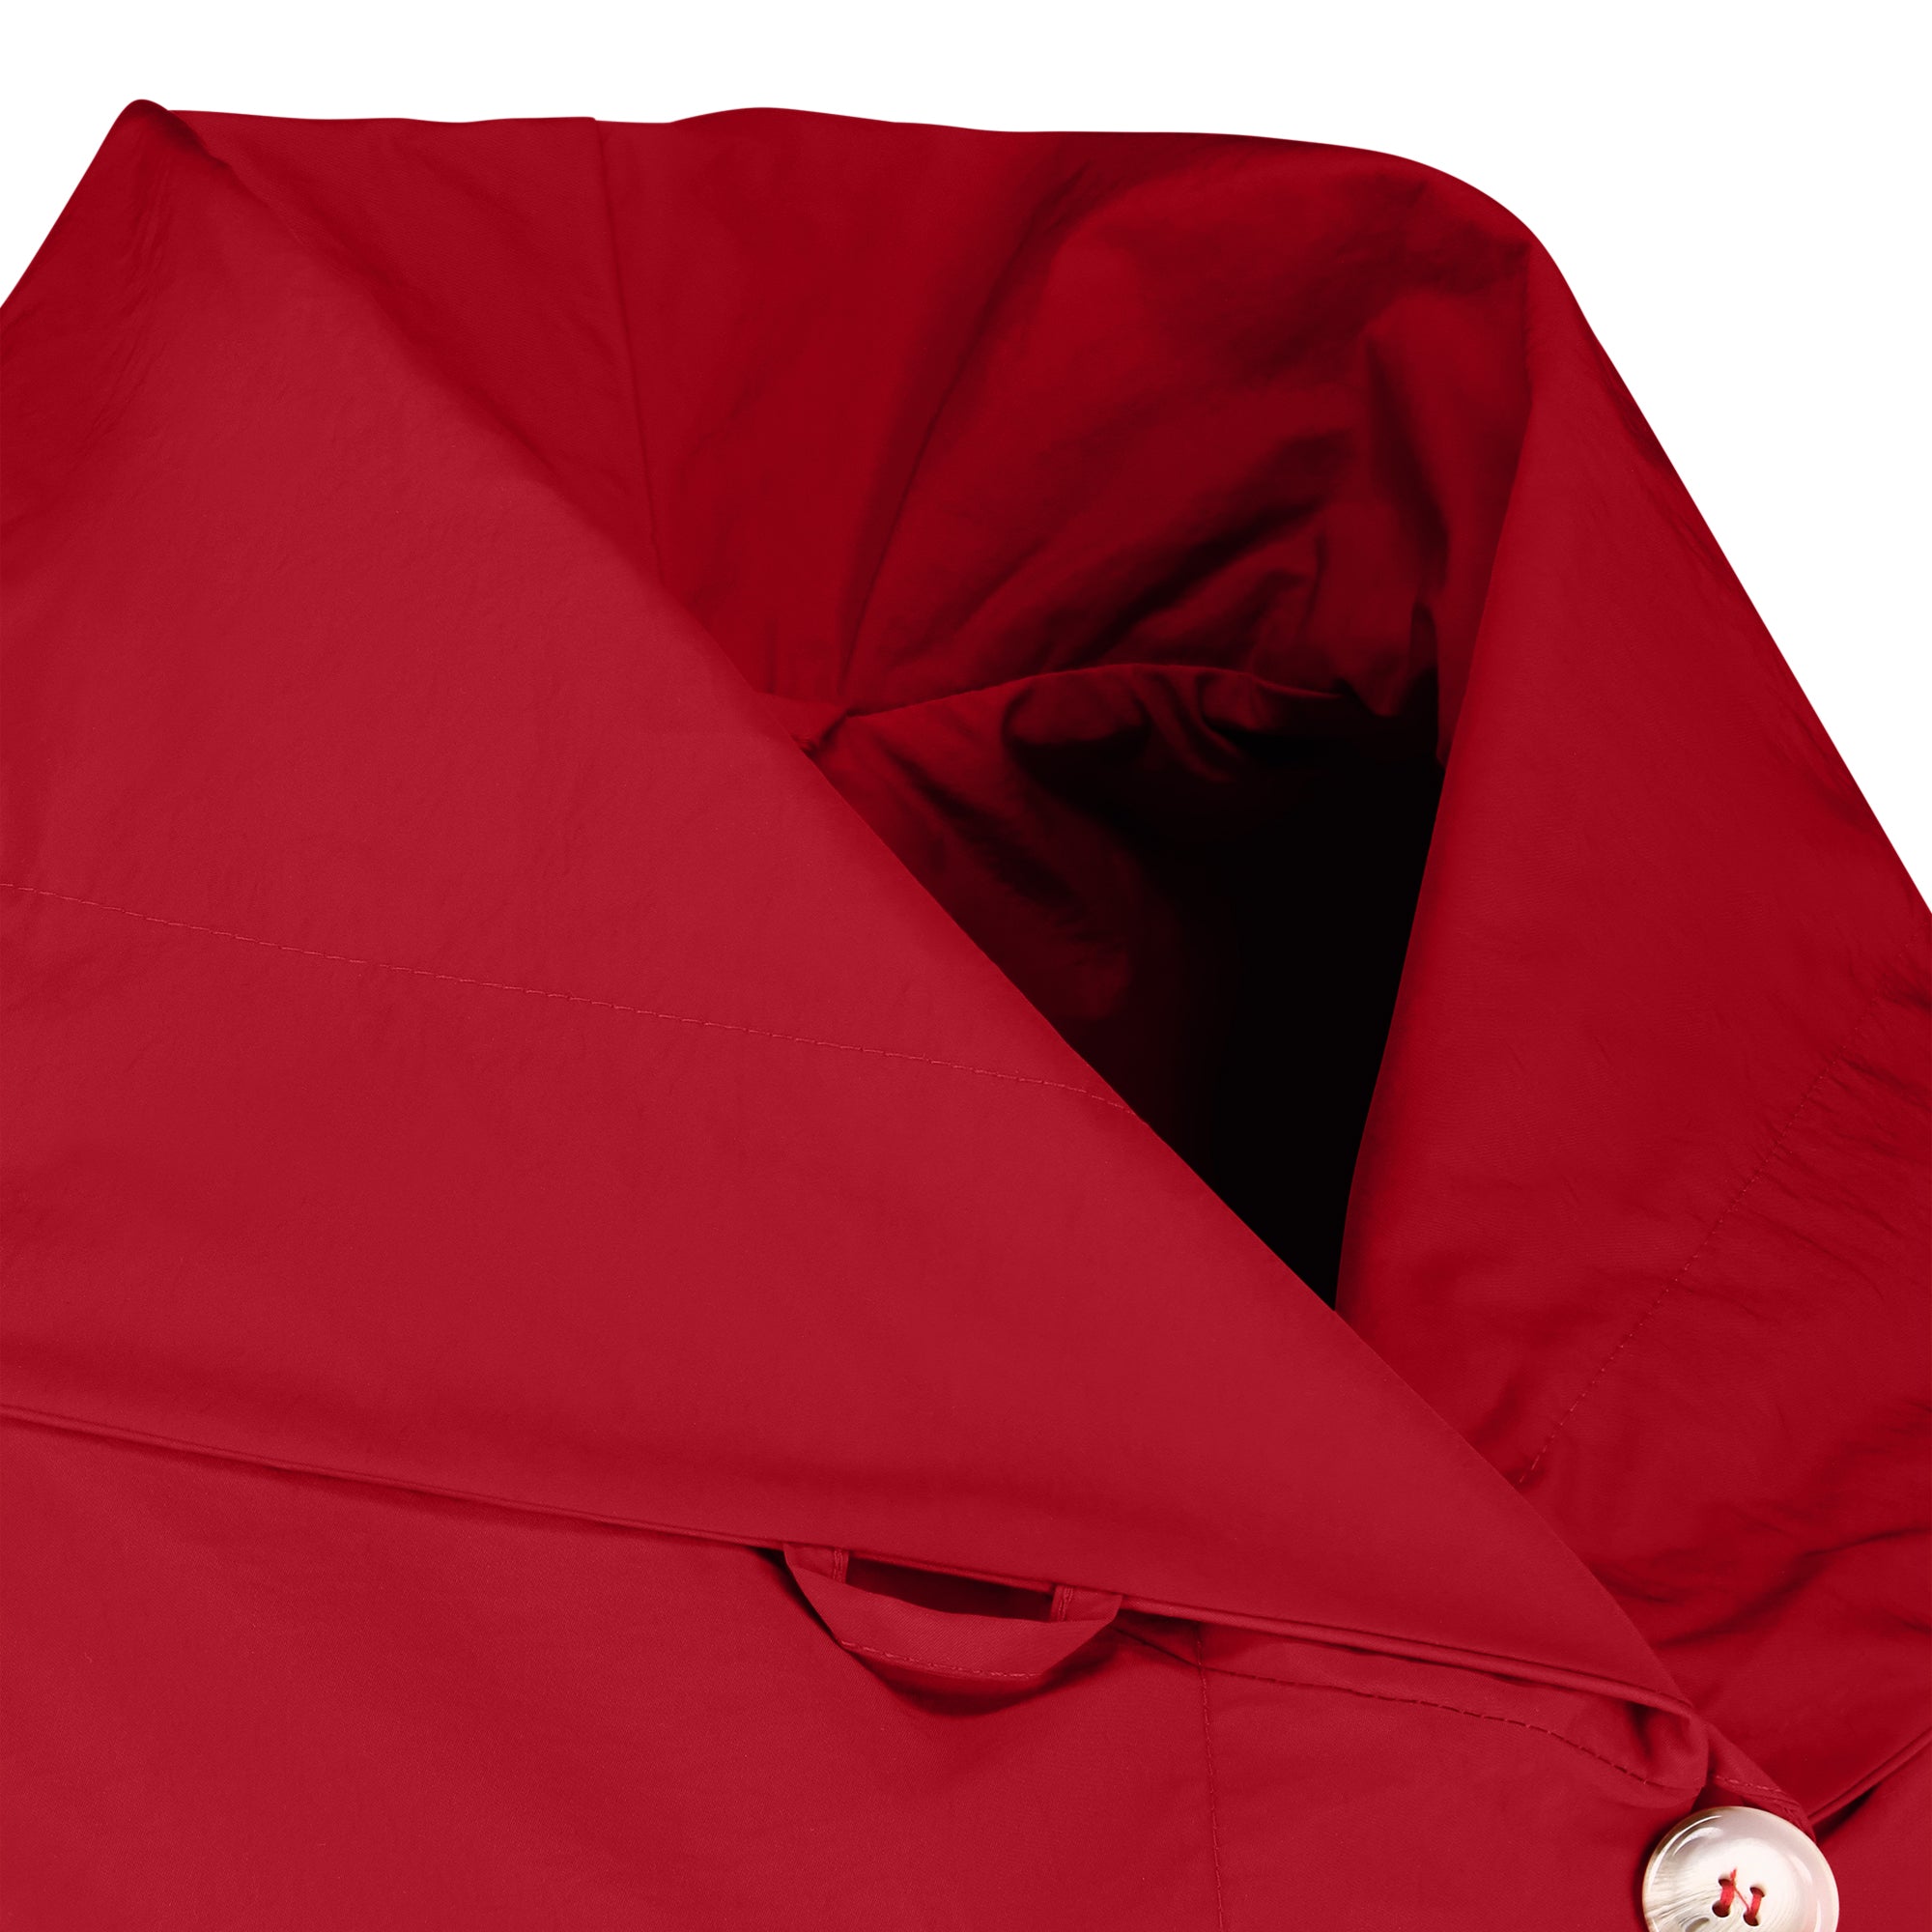 Mistral raincoat - Red Sunset color - neckline detail